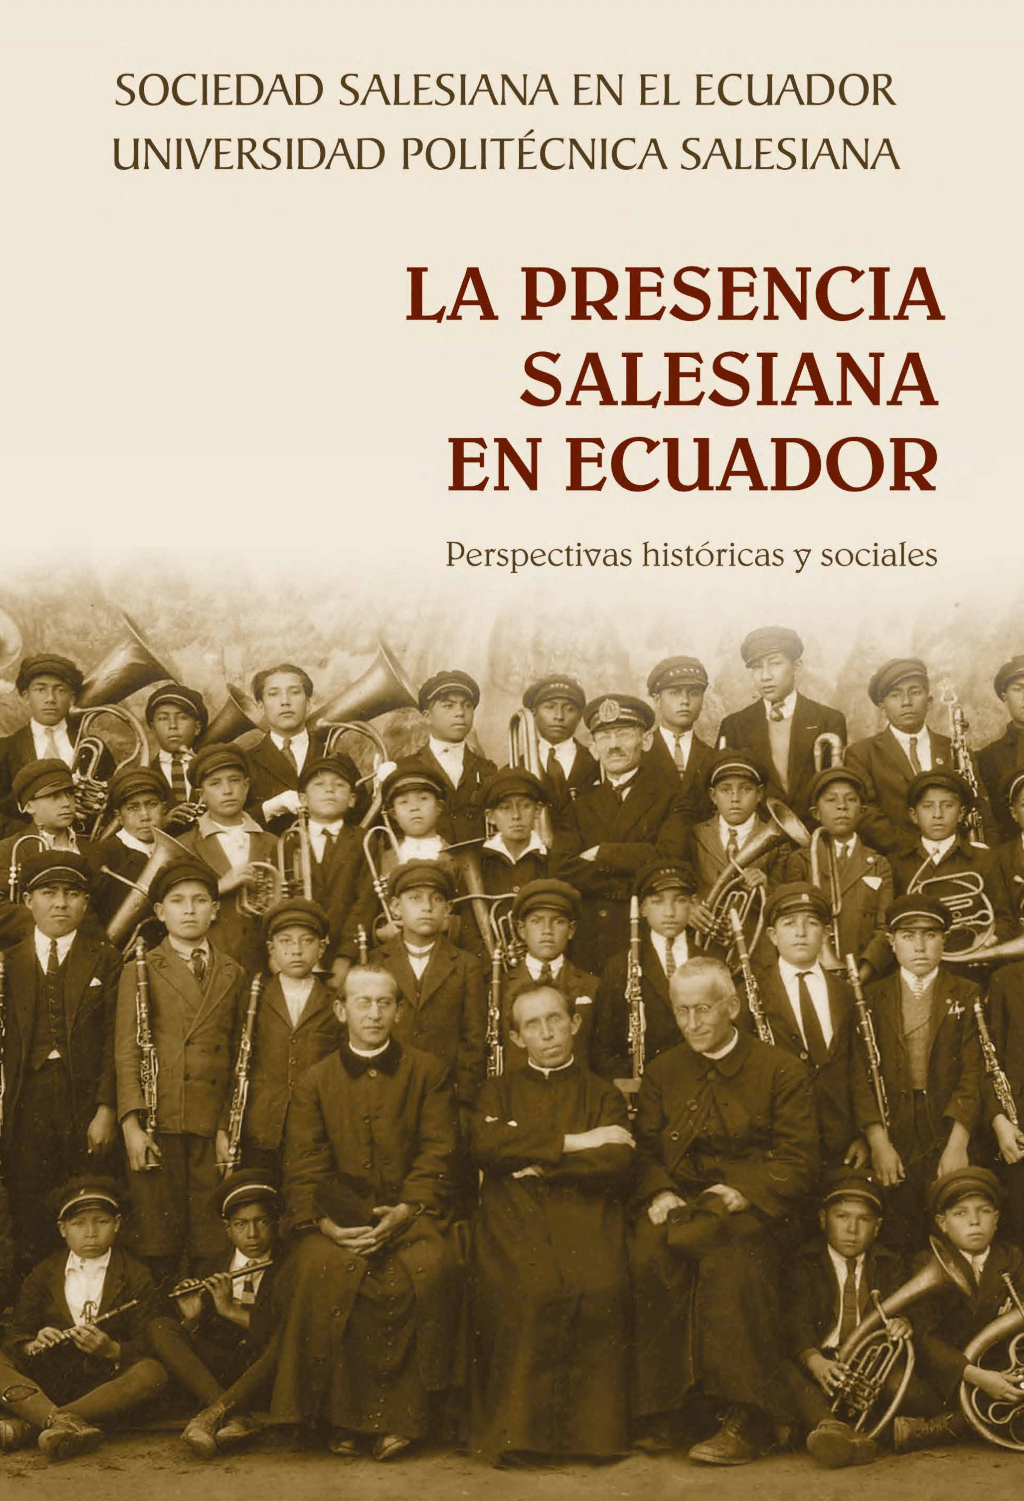 La Presencia Salesiana en Ecuador: Perspectivas históricas y sociales